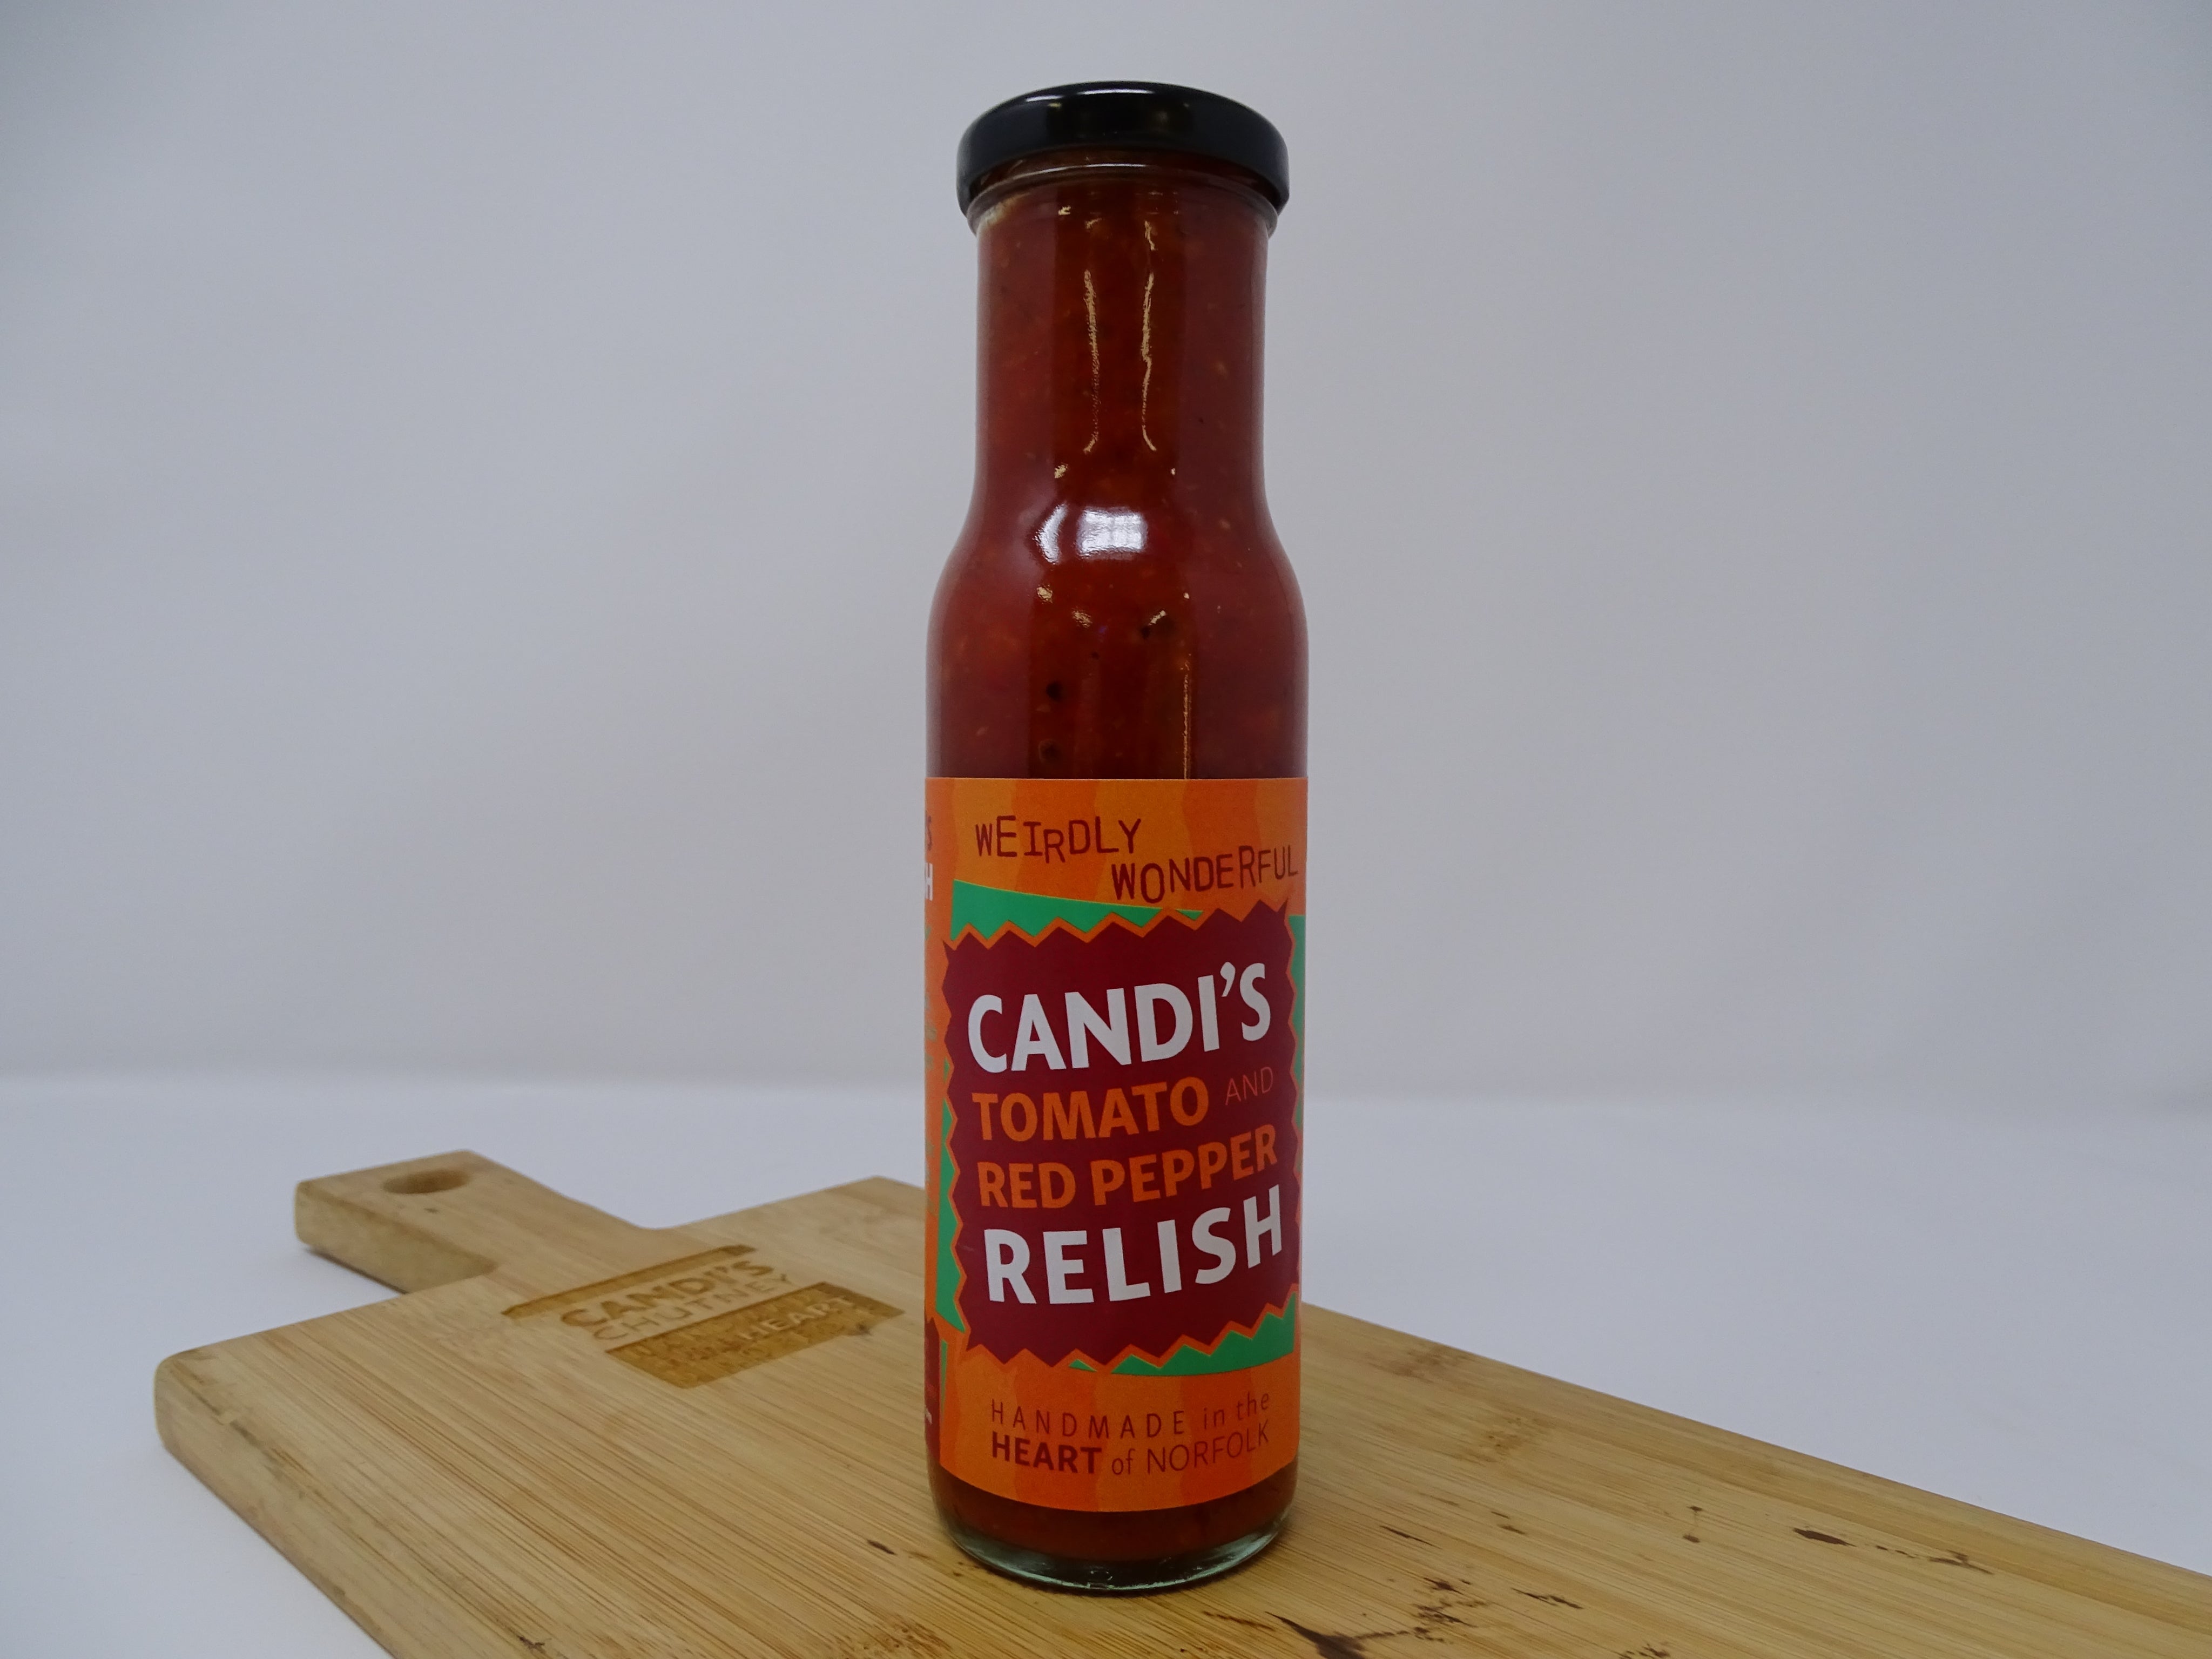 Candi's Tomato & Red Pepper Relish